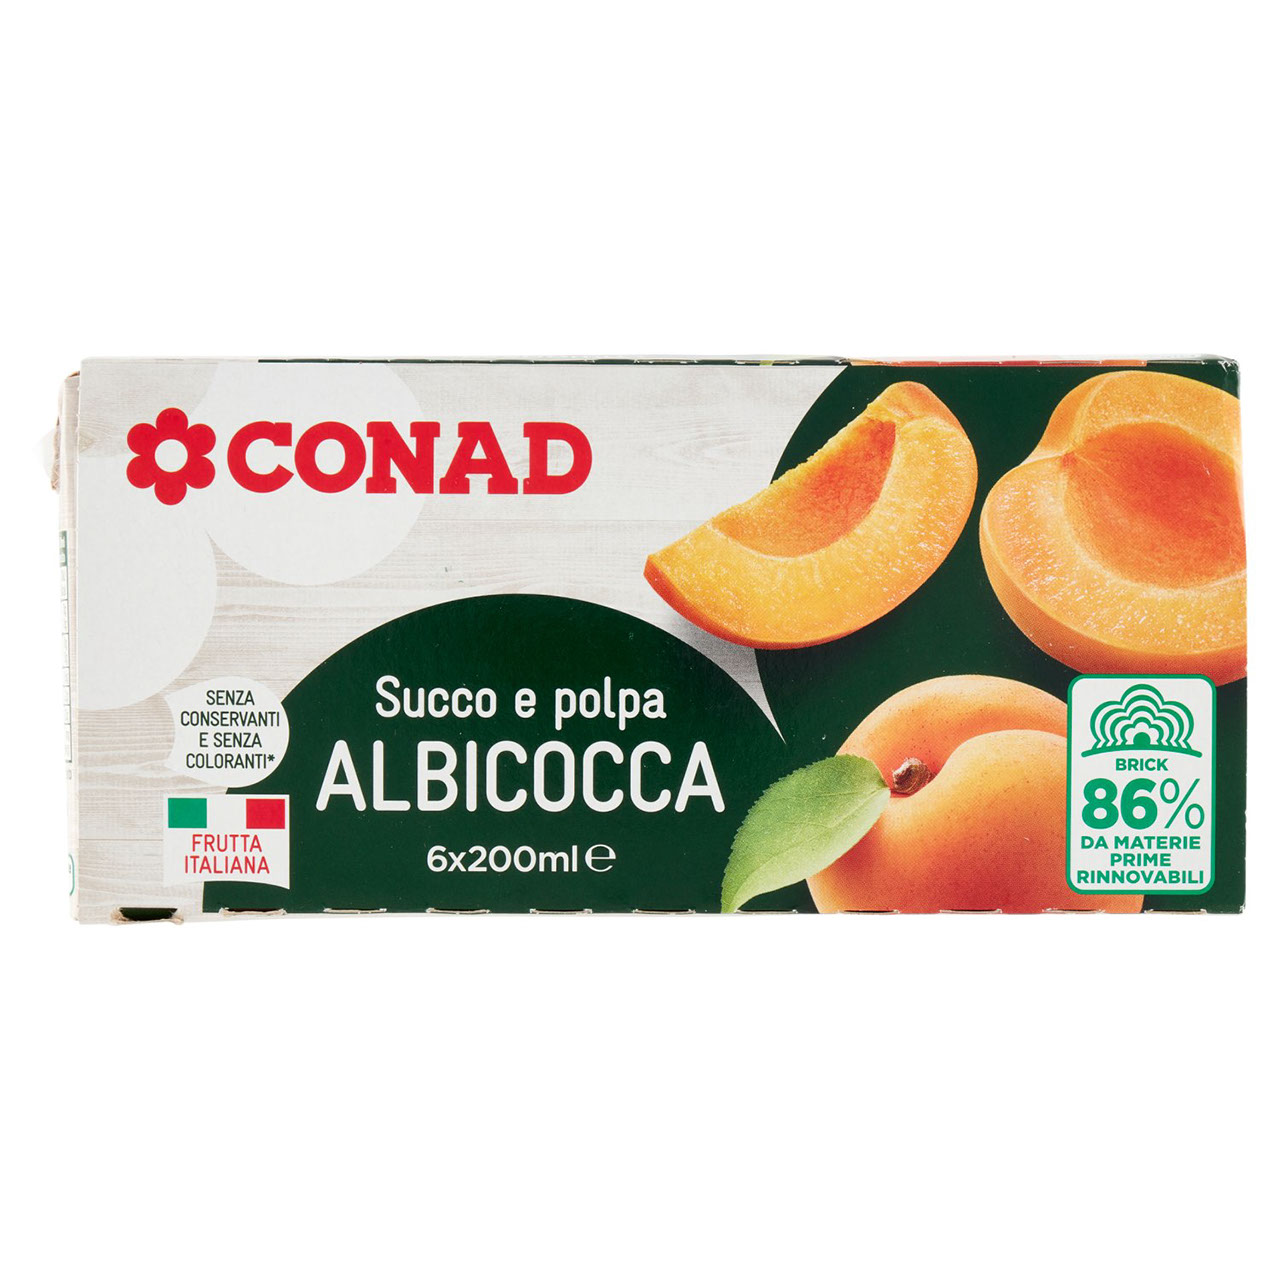 Succo e polpa Albicocca 6x200ml Conad online